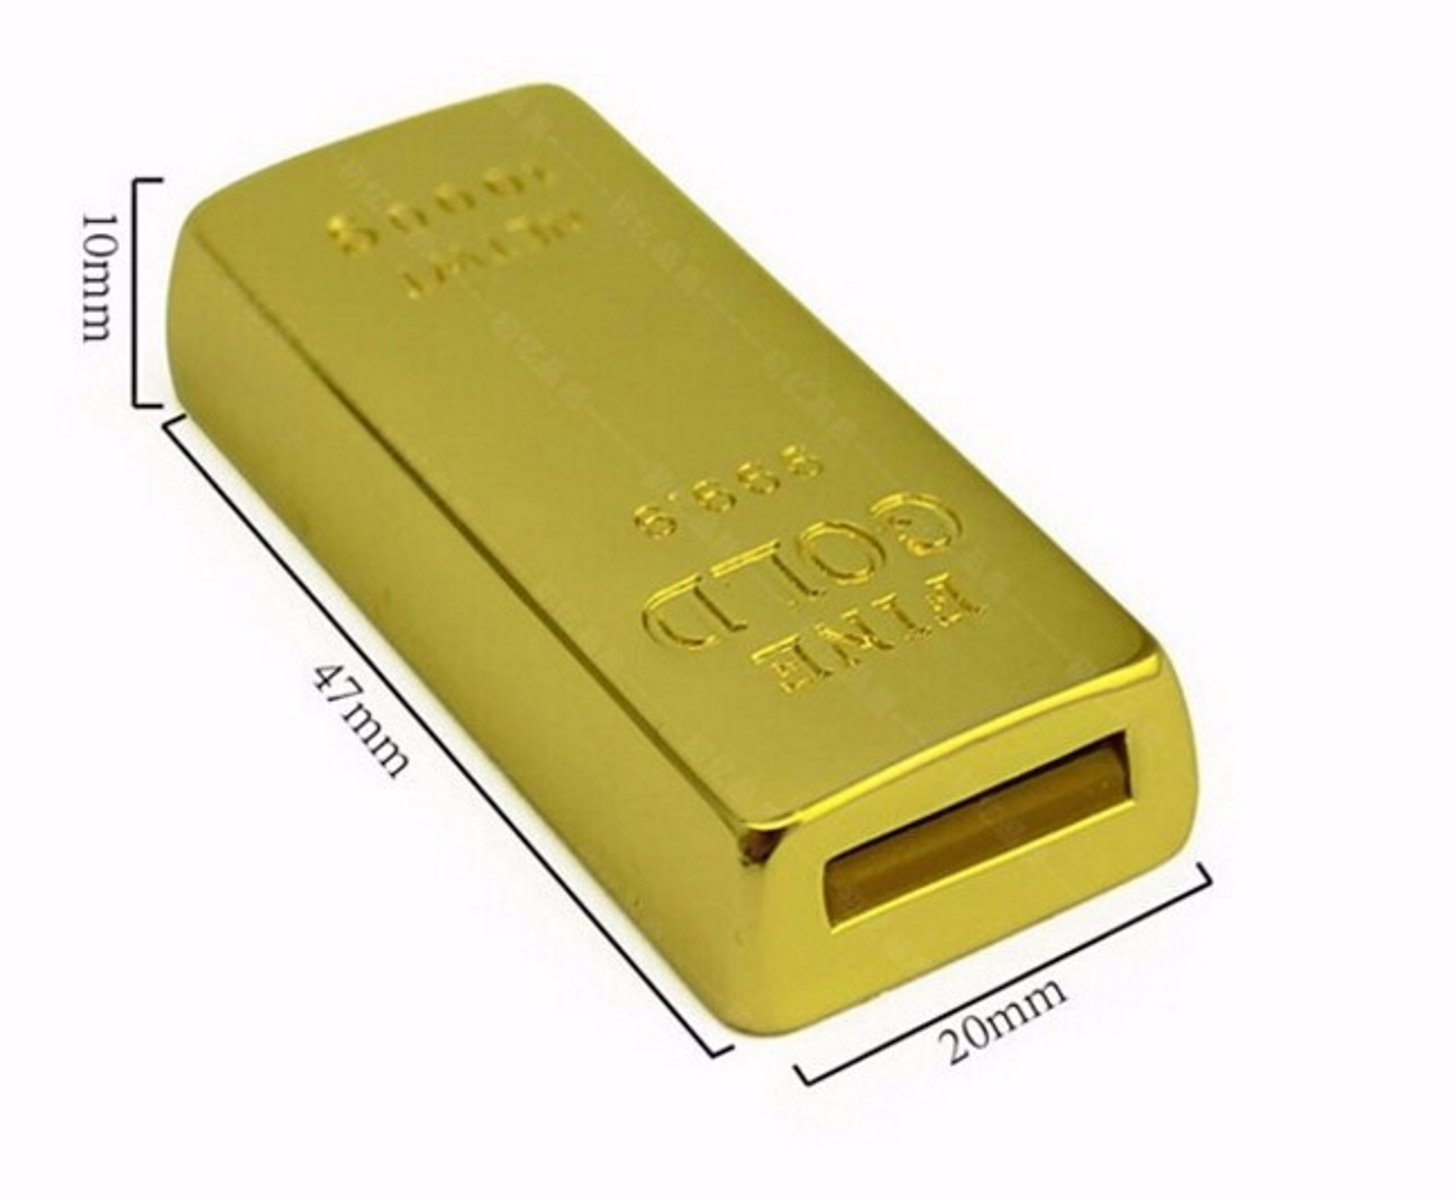 GB) 4 USB-Stick ® GERMANY USB (Gold, Goldbarren